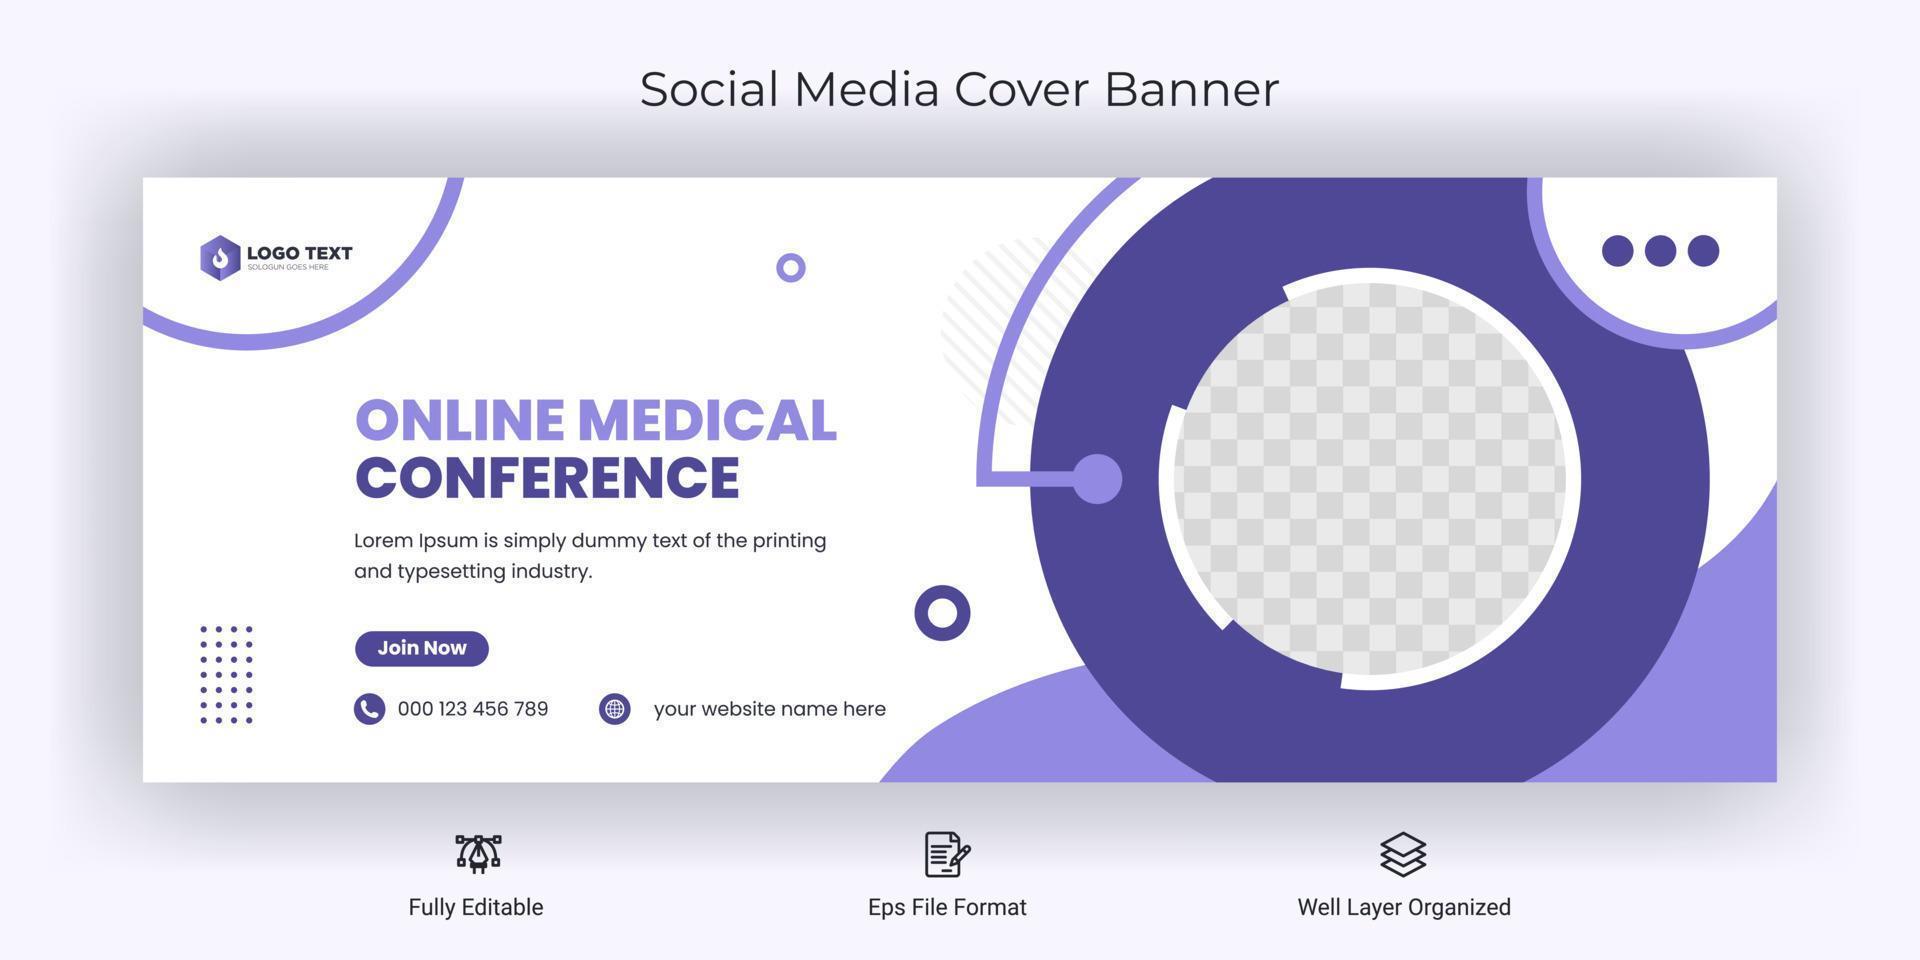 conférence médicale en ligne publication sur les médias sociaux modèle de bannière de couverture facebook vecteur